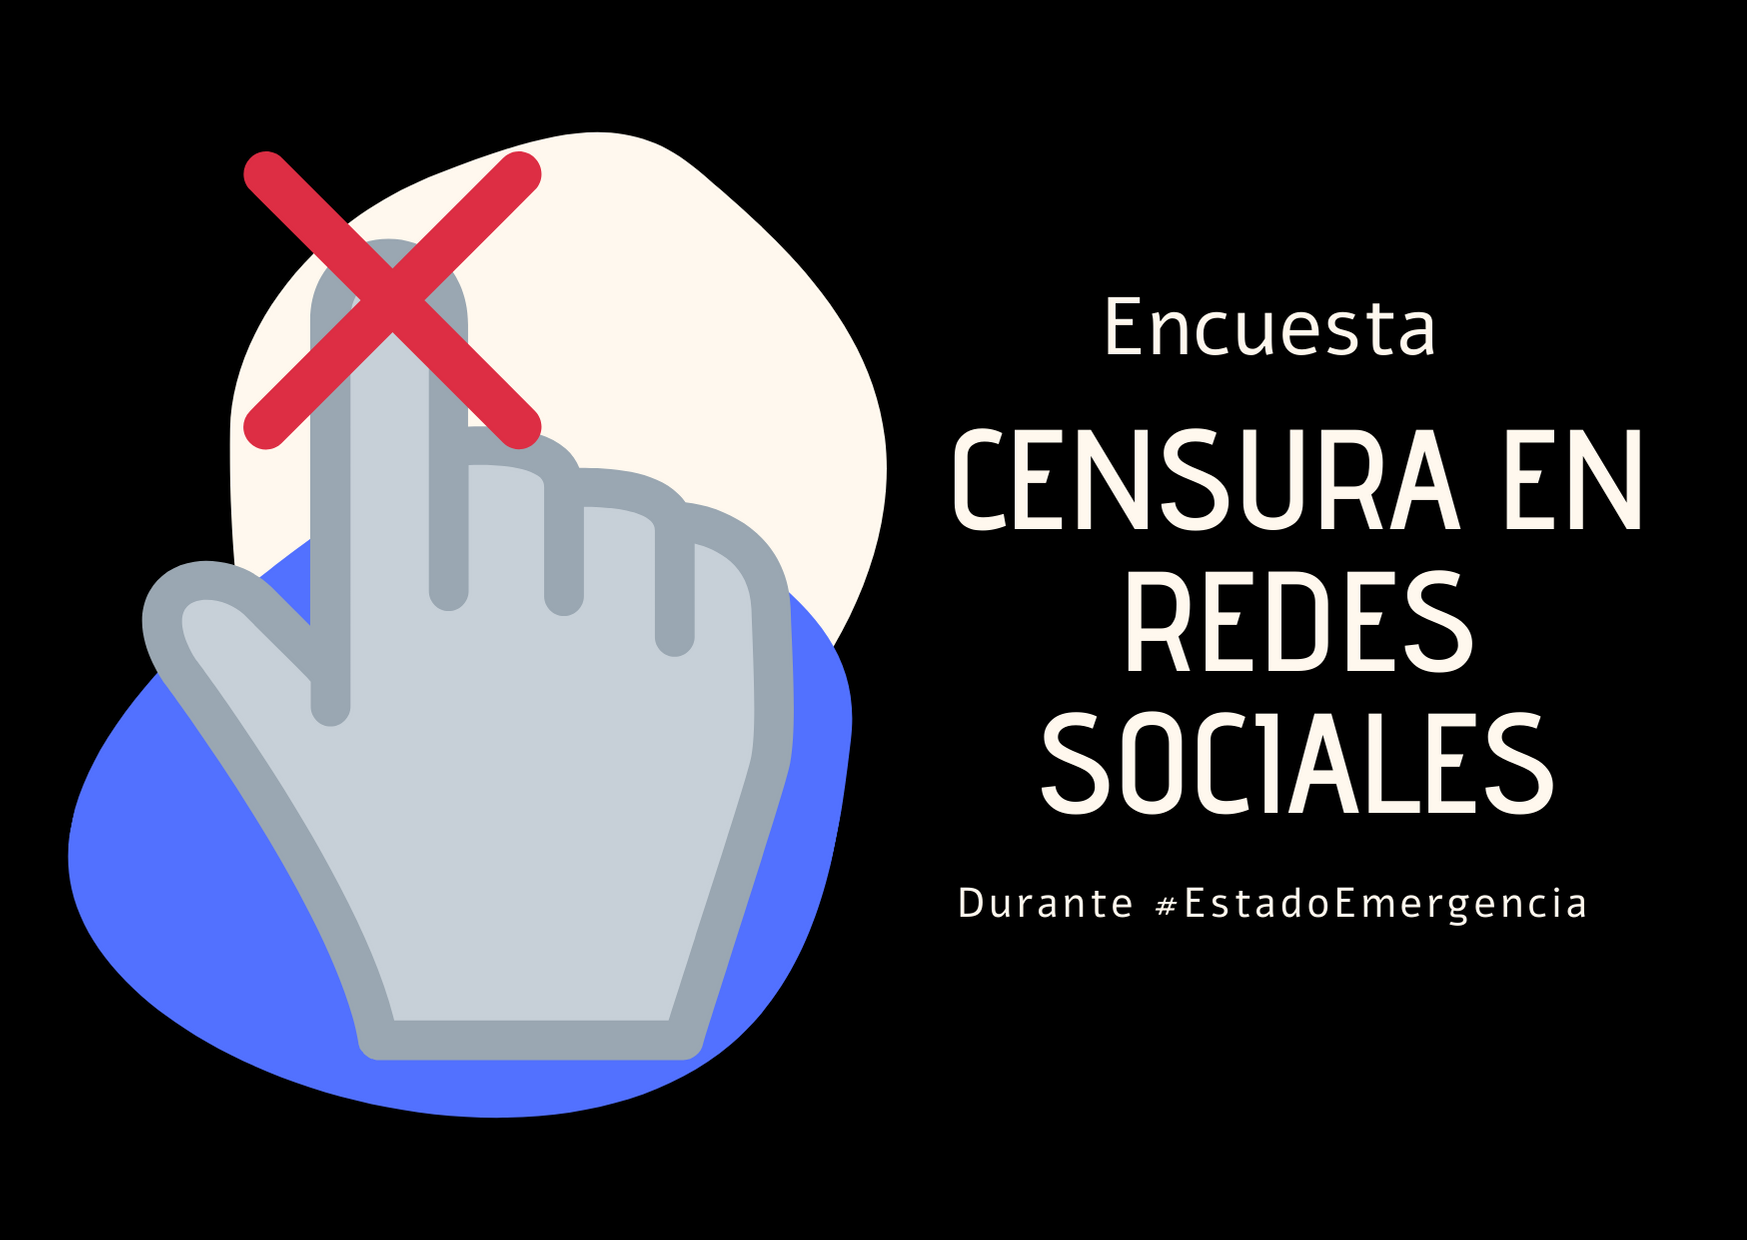 Habilitamos encuesta para reportar casos de censura o baja de cuentas en Redes Sociales durante #EstadoEmergencia